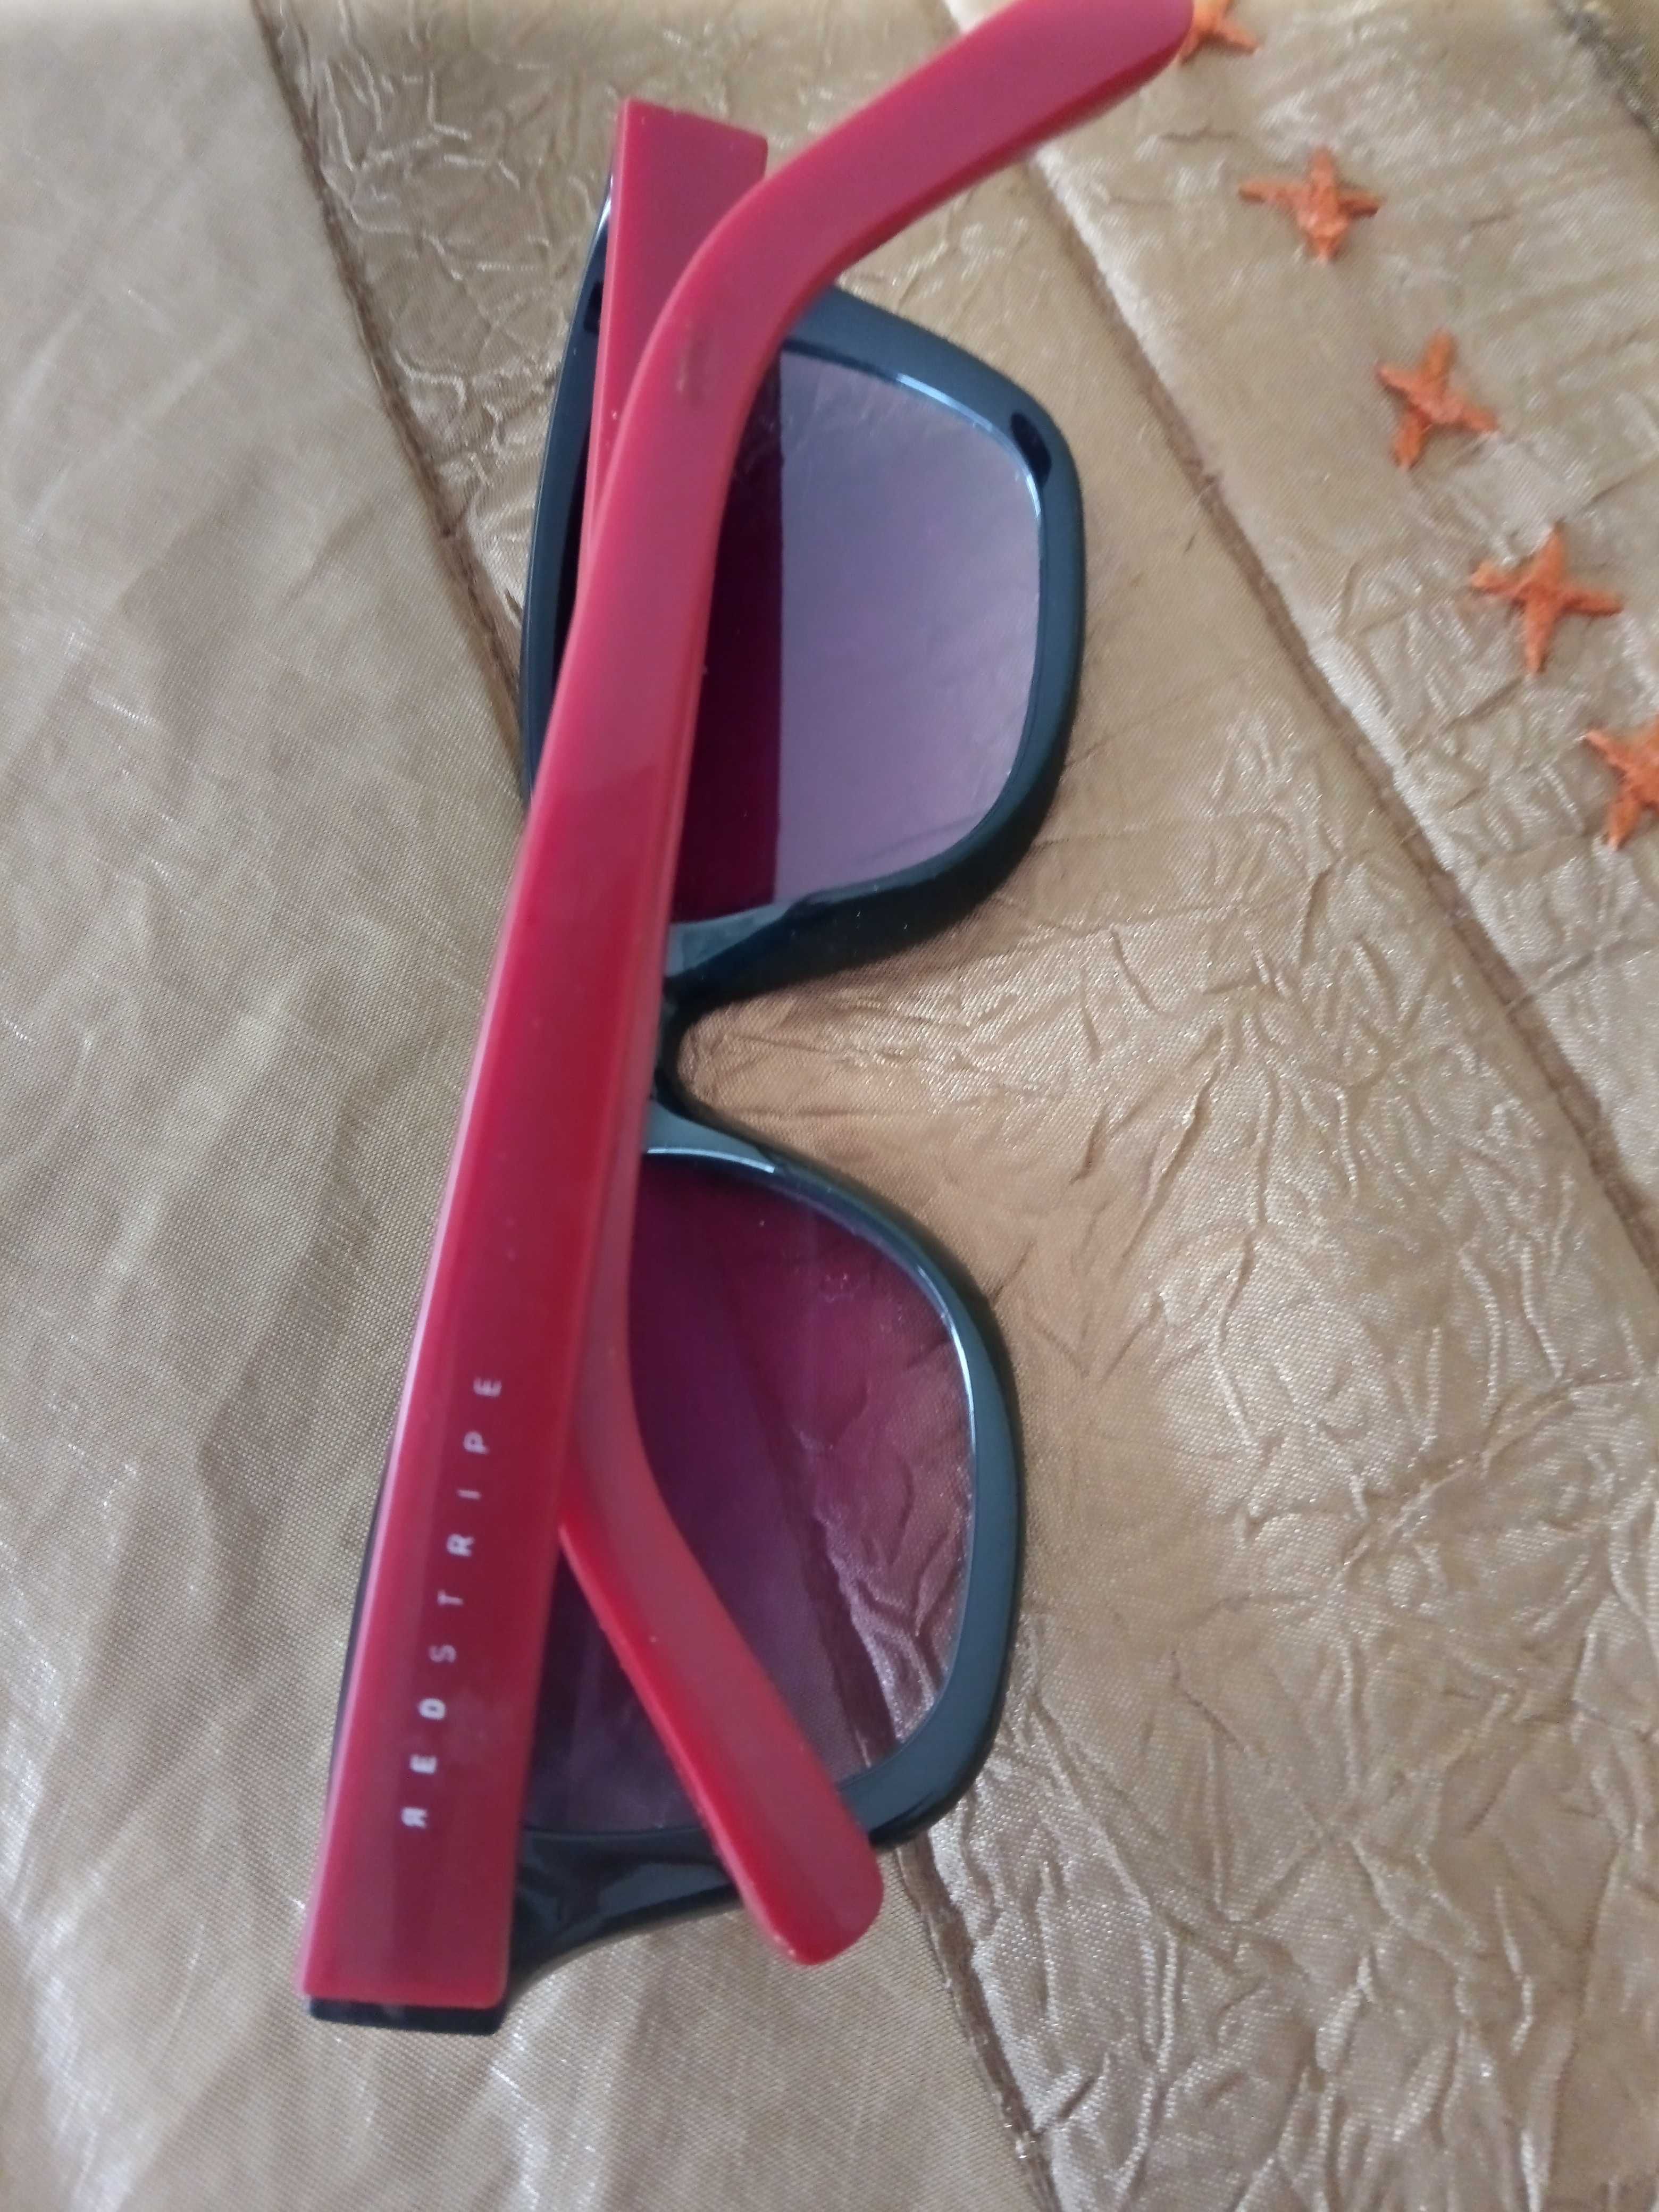 Óculos de sol Red Stripe Novos!!!